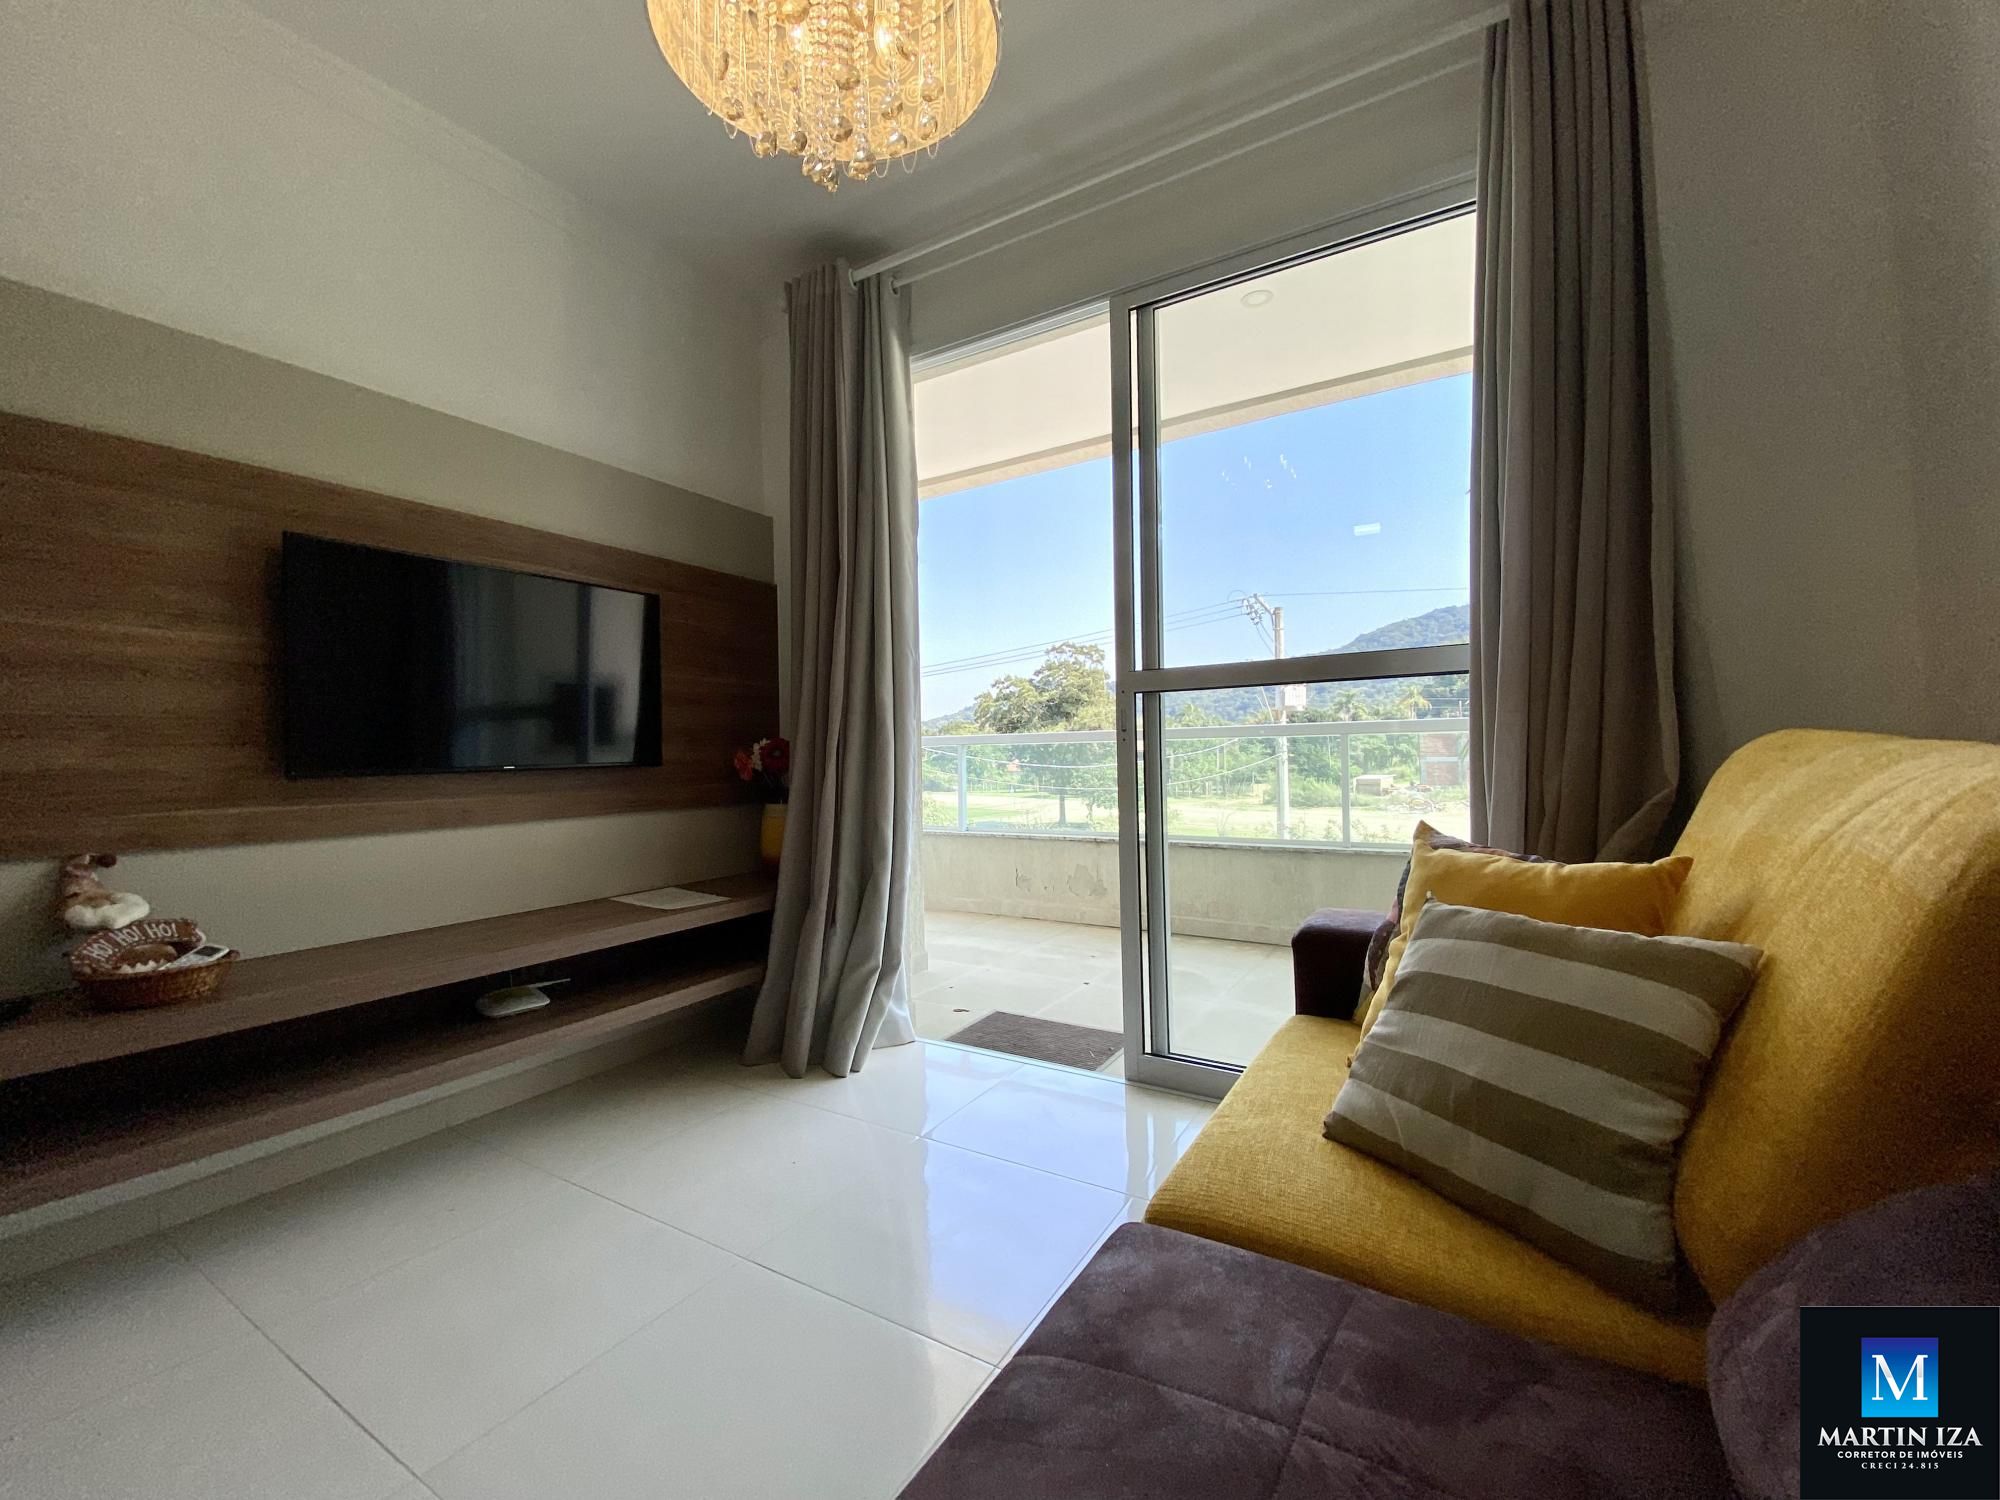 Apartamento com 2 Dormitórios para alugar, 85 m² por R$ 450,00